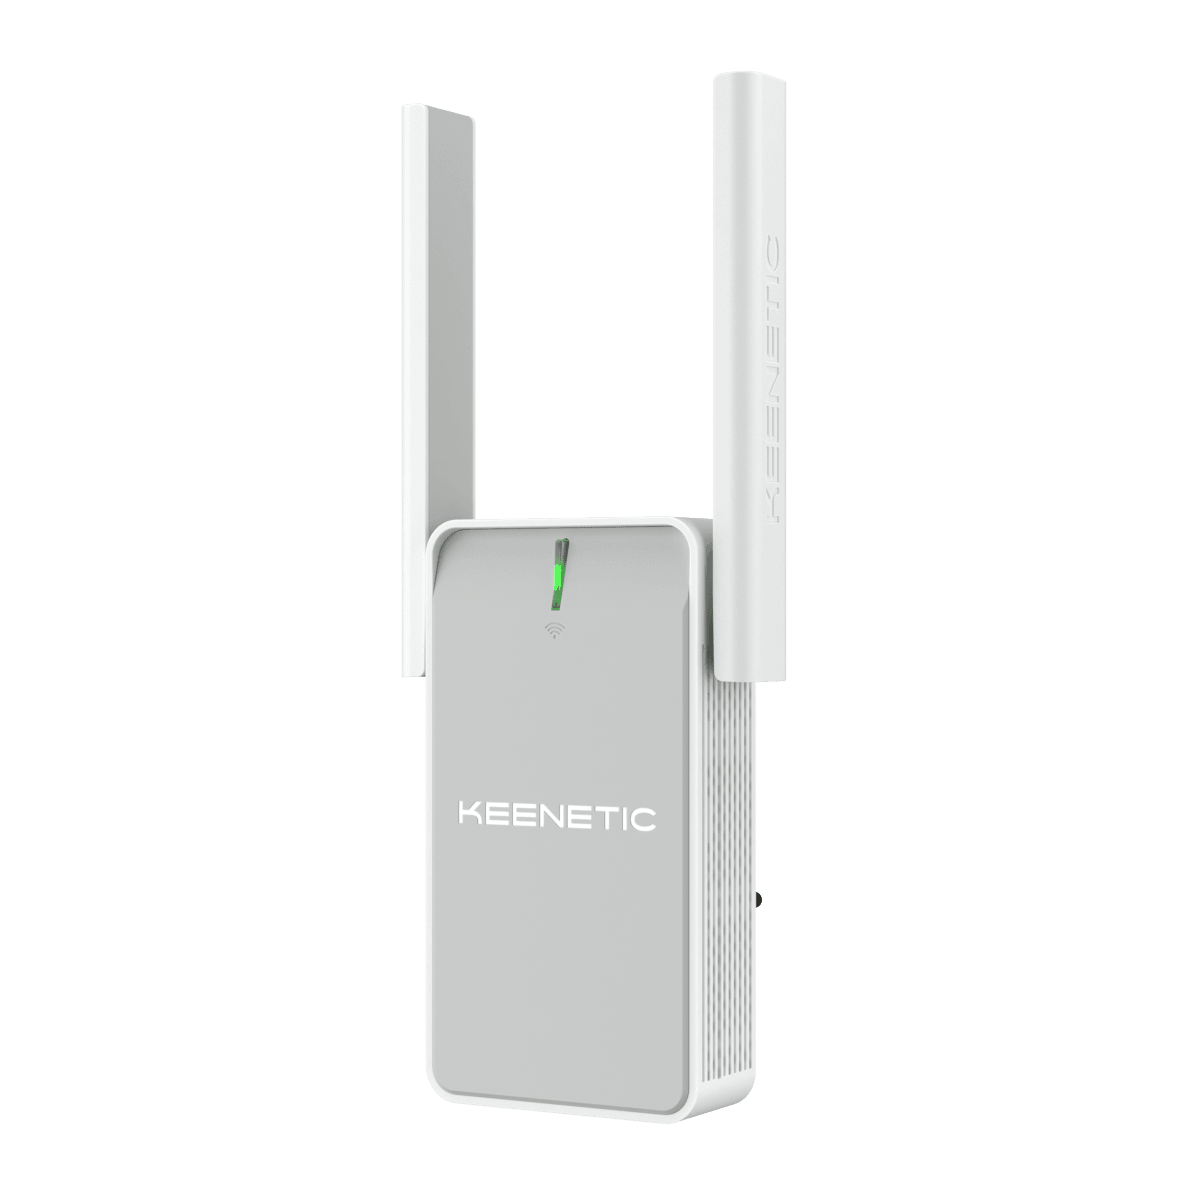 Усилитель сигнала (репитер) Keenetic Buddy 5S, 802.11a/b/g/n/ac, 2.4 / 5 ГГц, 1.17 Гбит/с, порты Ethernet: 1x1 Гбит/с, внешних антенн: 2x3dBi (KN-3410) - фото 1